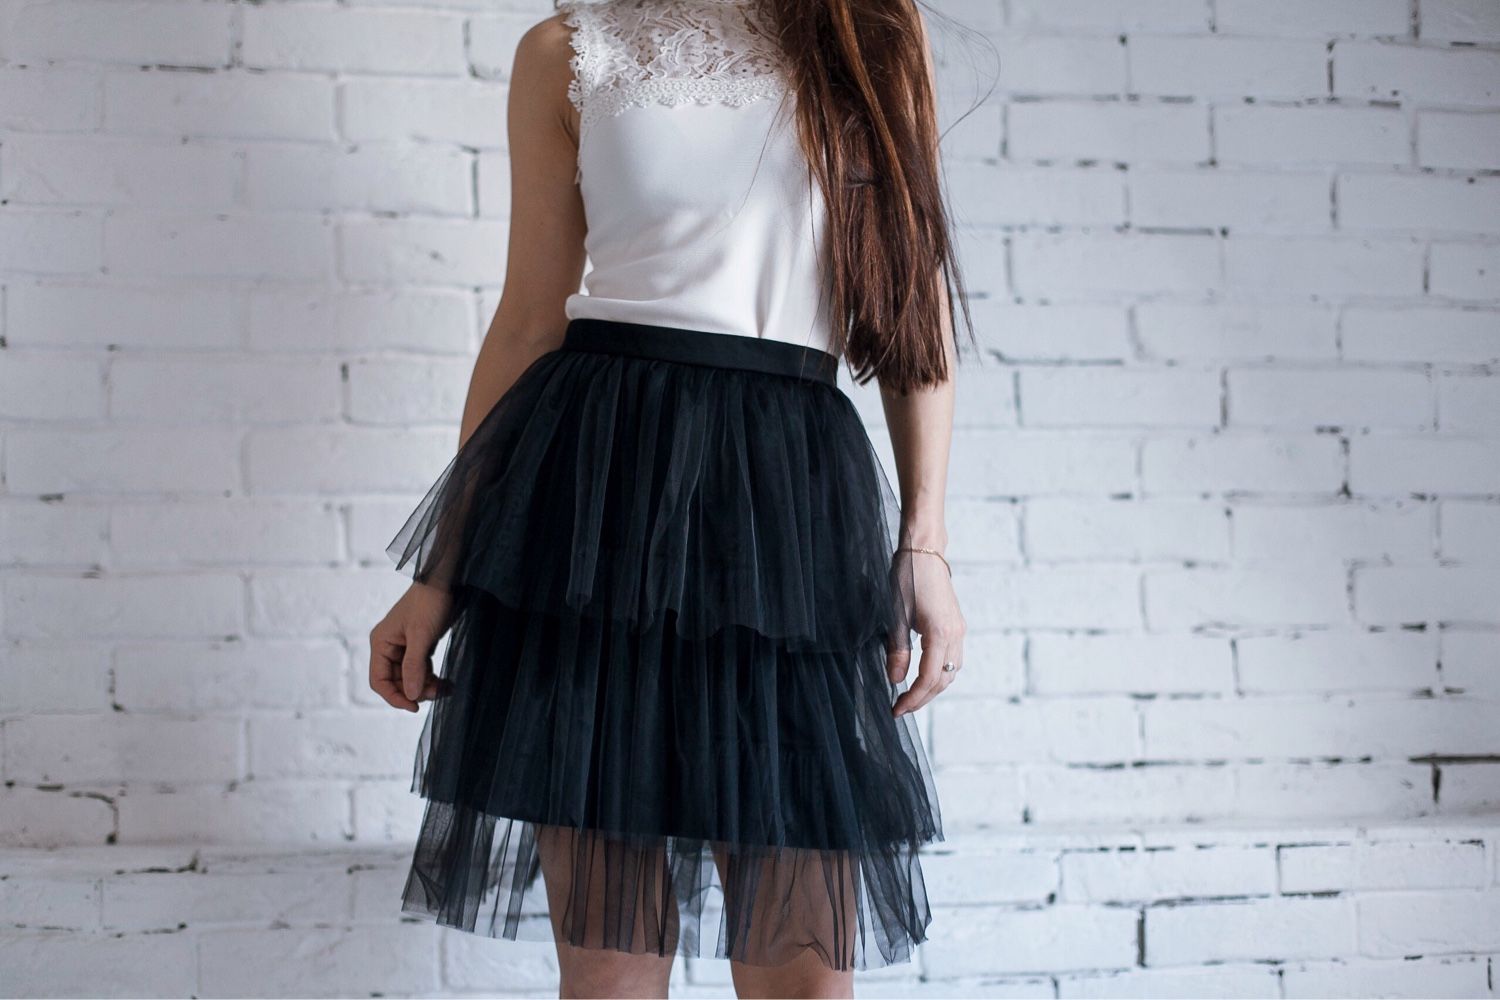 Купить новую юбку. Юбка пачка. Фатиновая юбка. Черная фатиновая юбка. Многослойная фатиновая юбка.